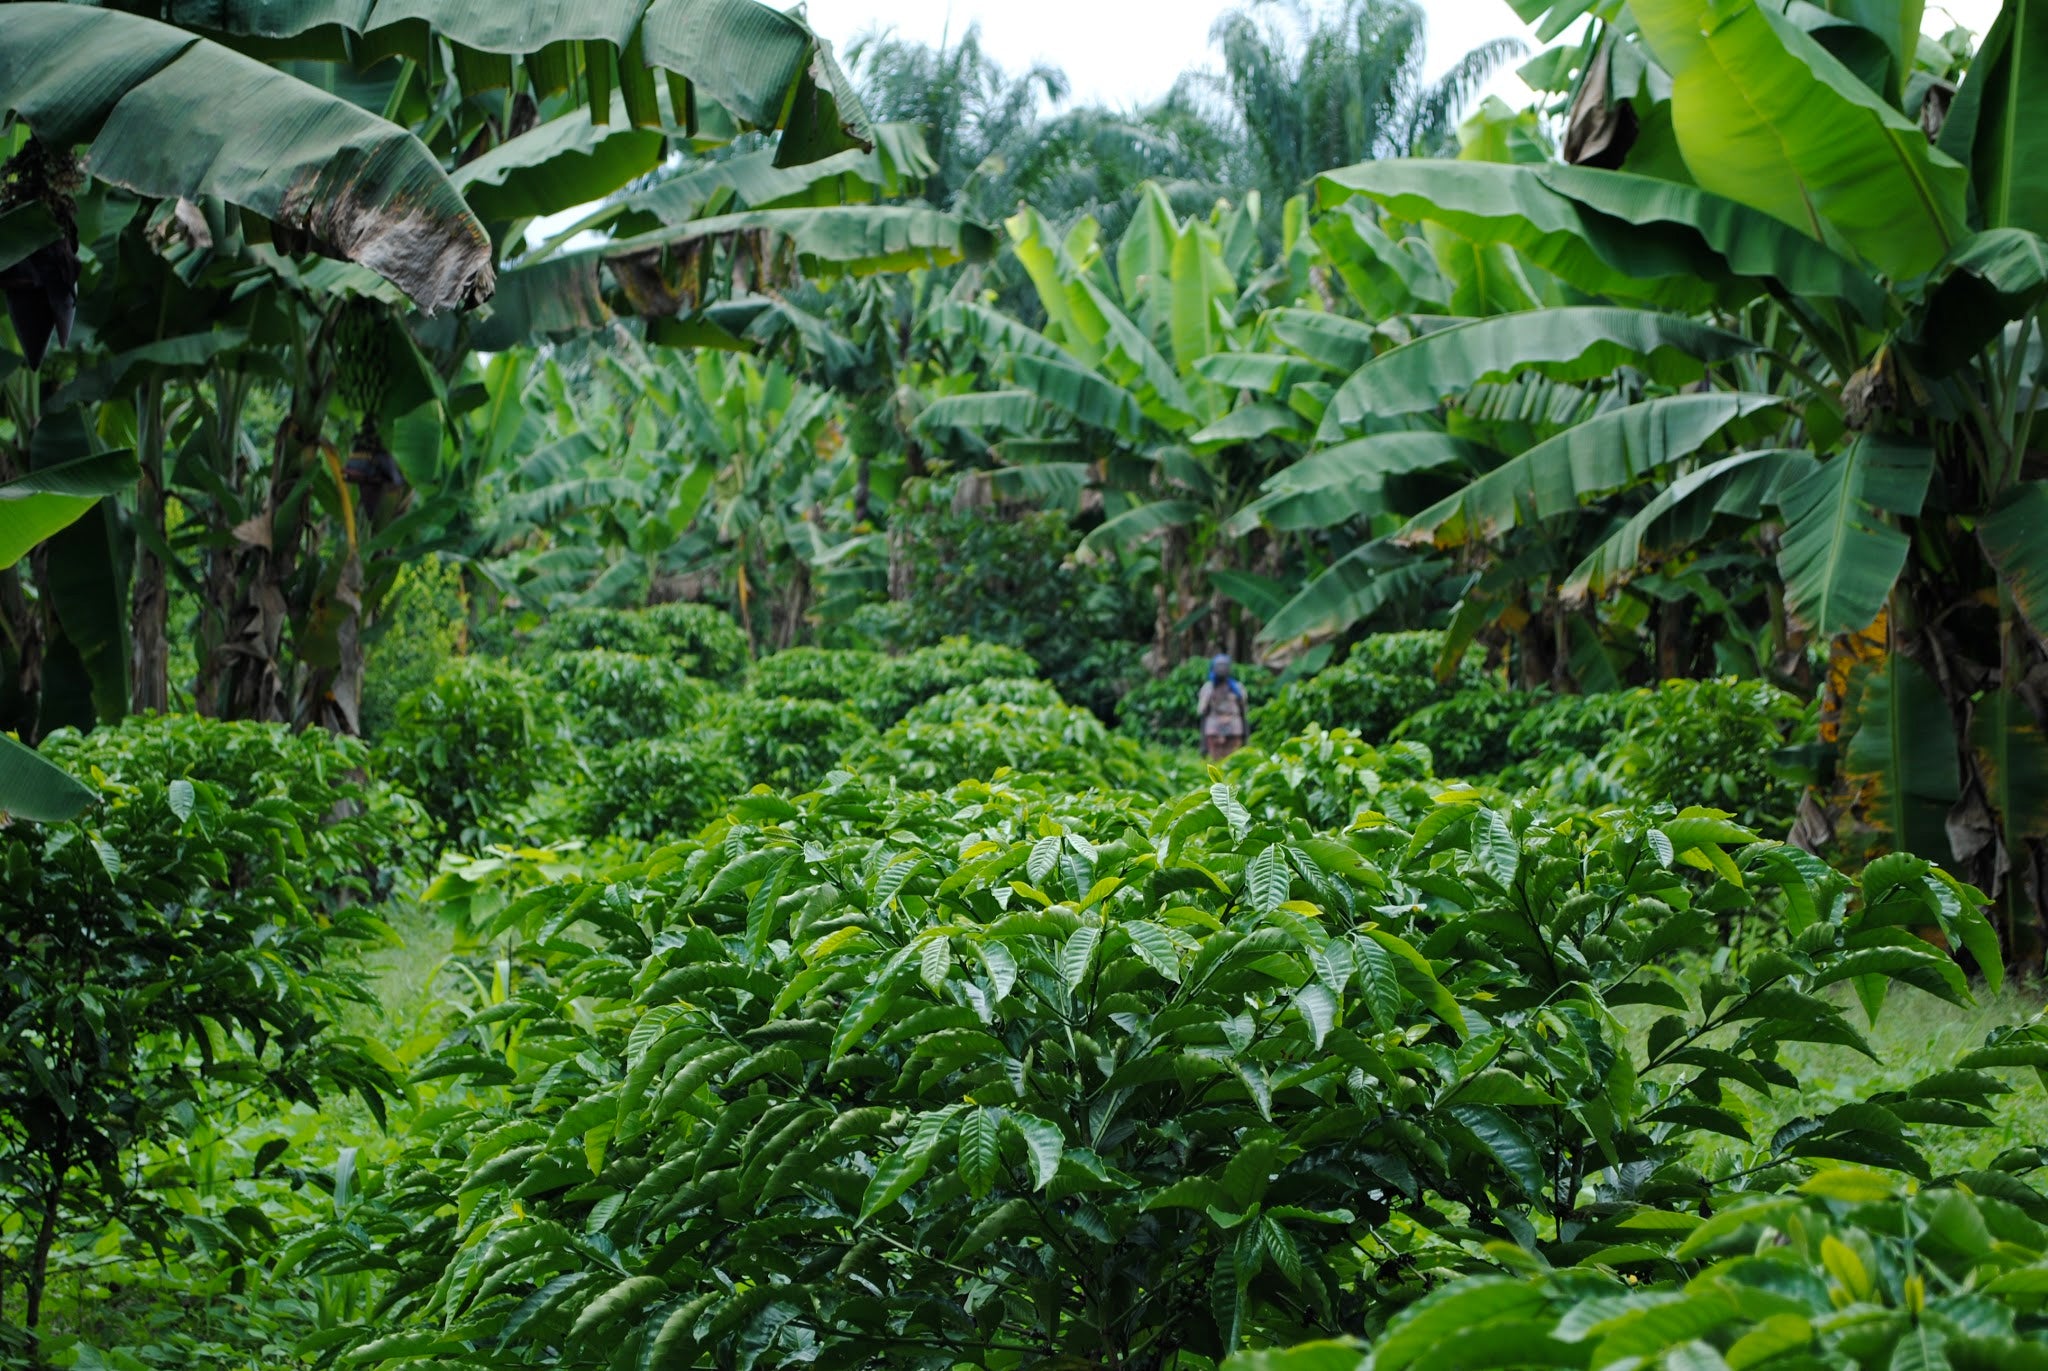 Cru Virunga 70%, Parque Nacional Virunga, Congo. Chocolate elegante con notas de cereza silvestre y té negro, ecológico